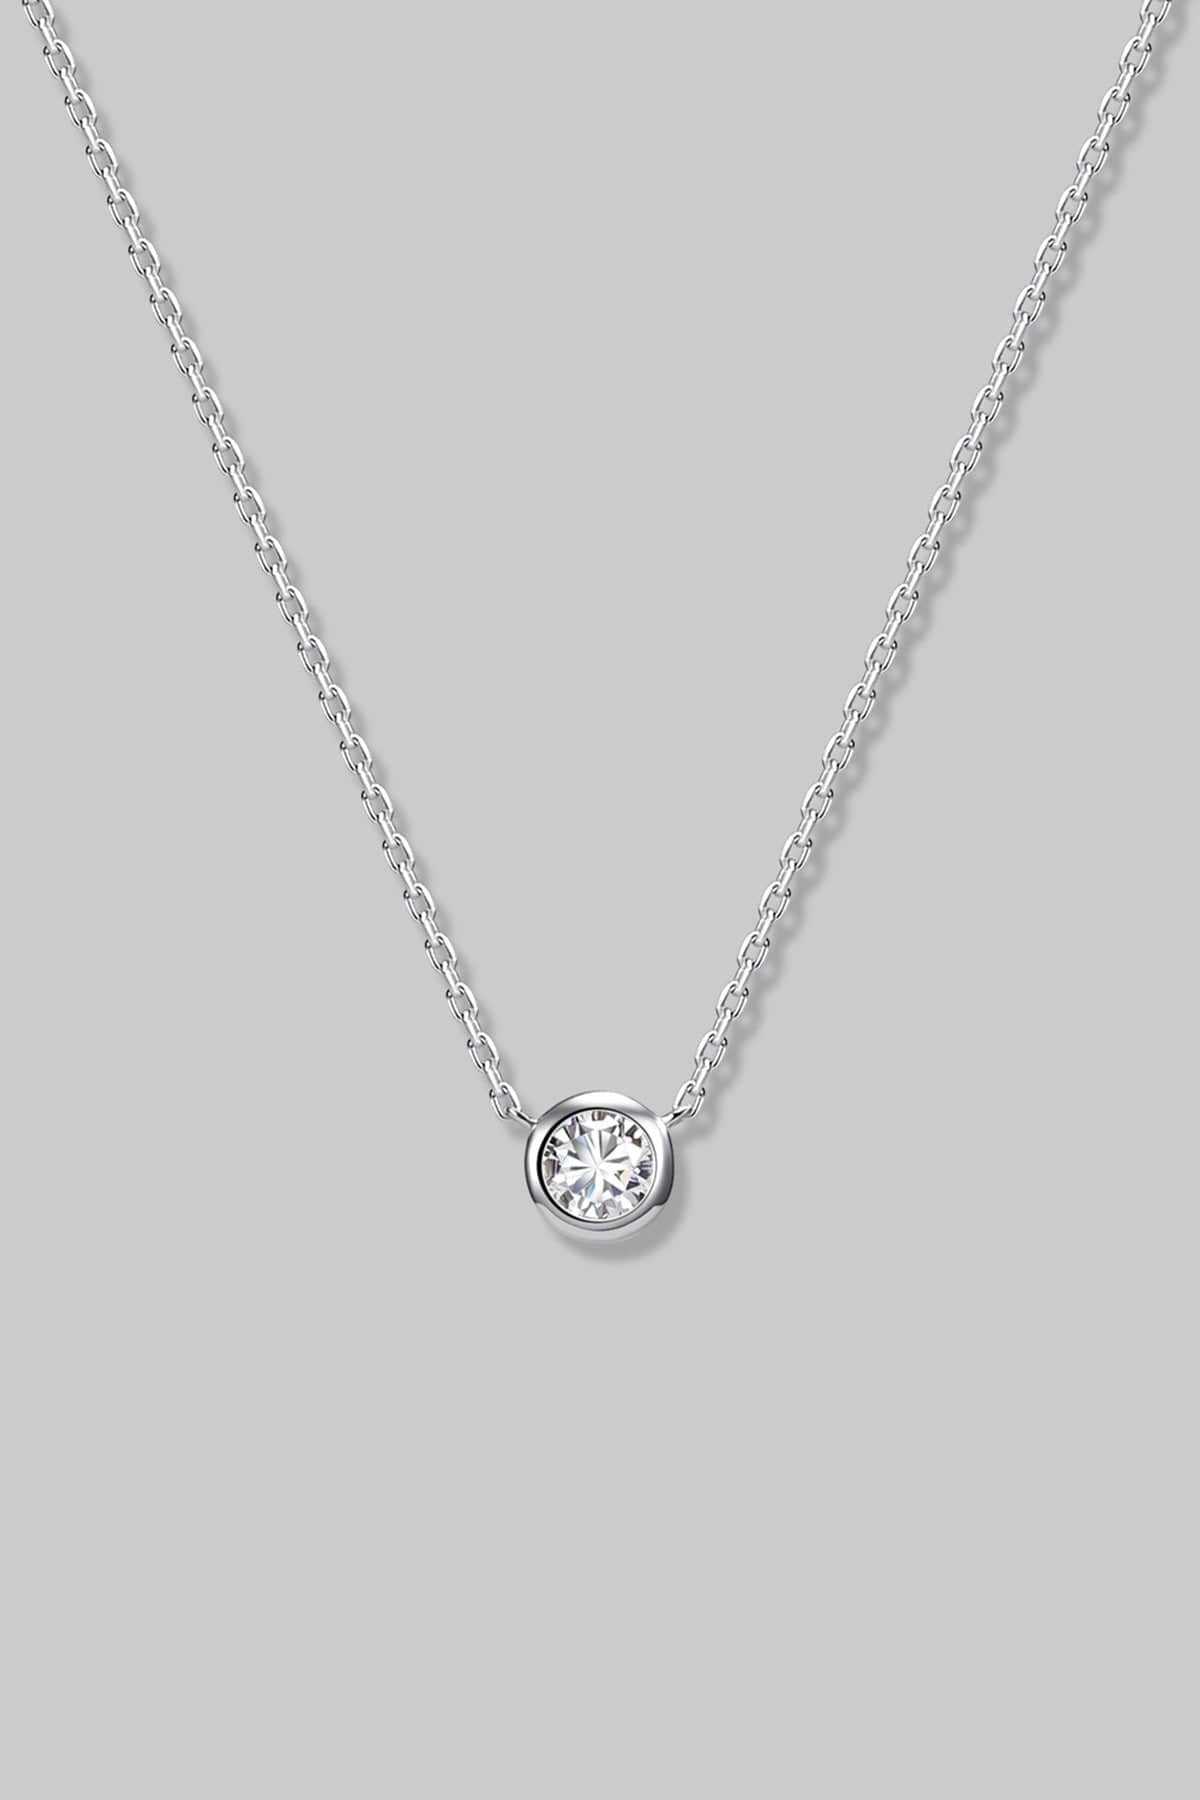 Round Diamond Necklace (0.14ct) - APM Monaco